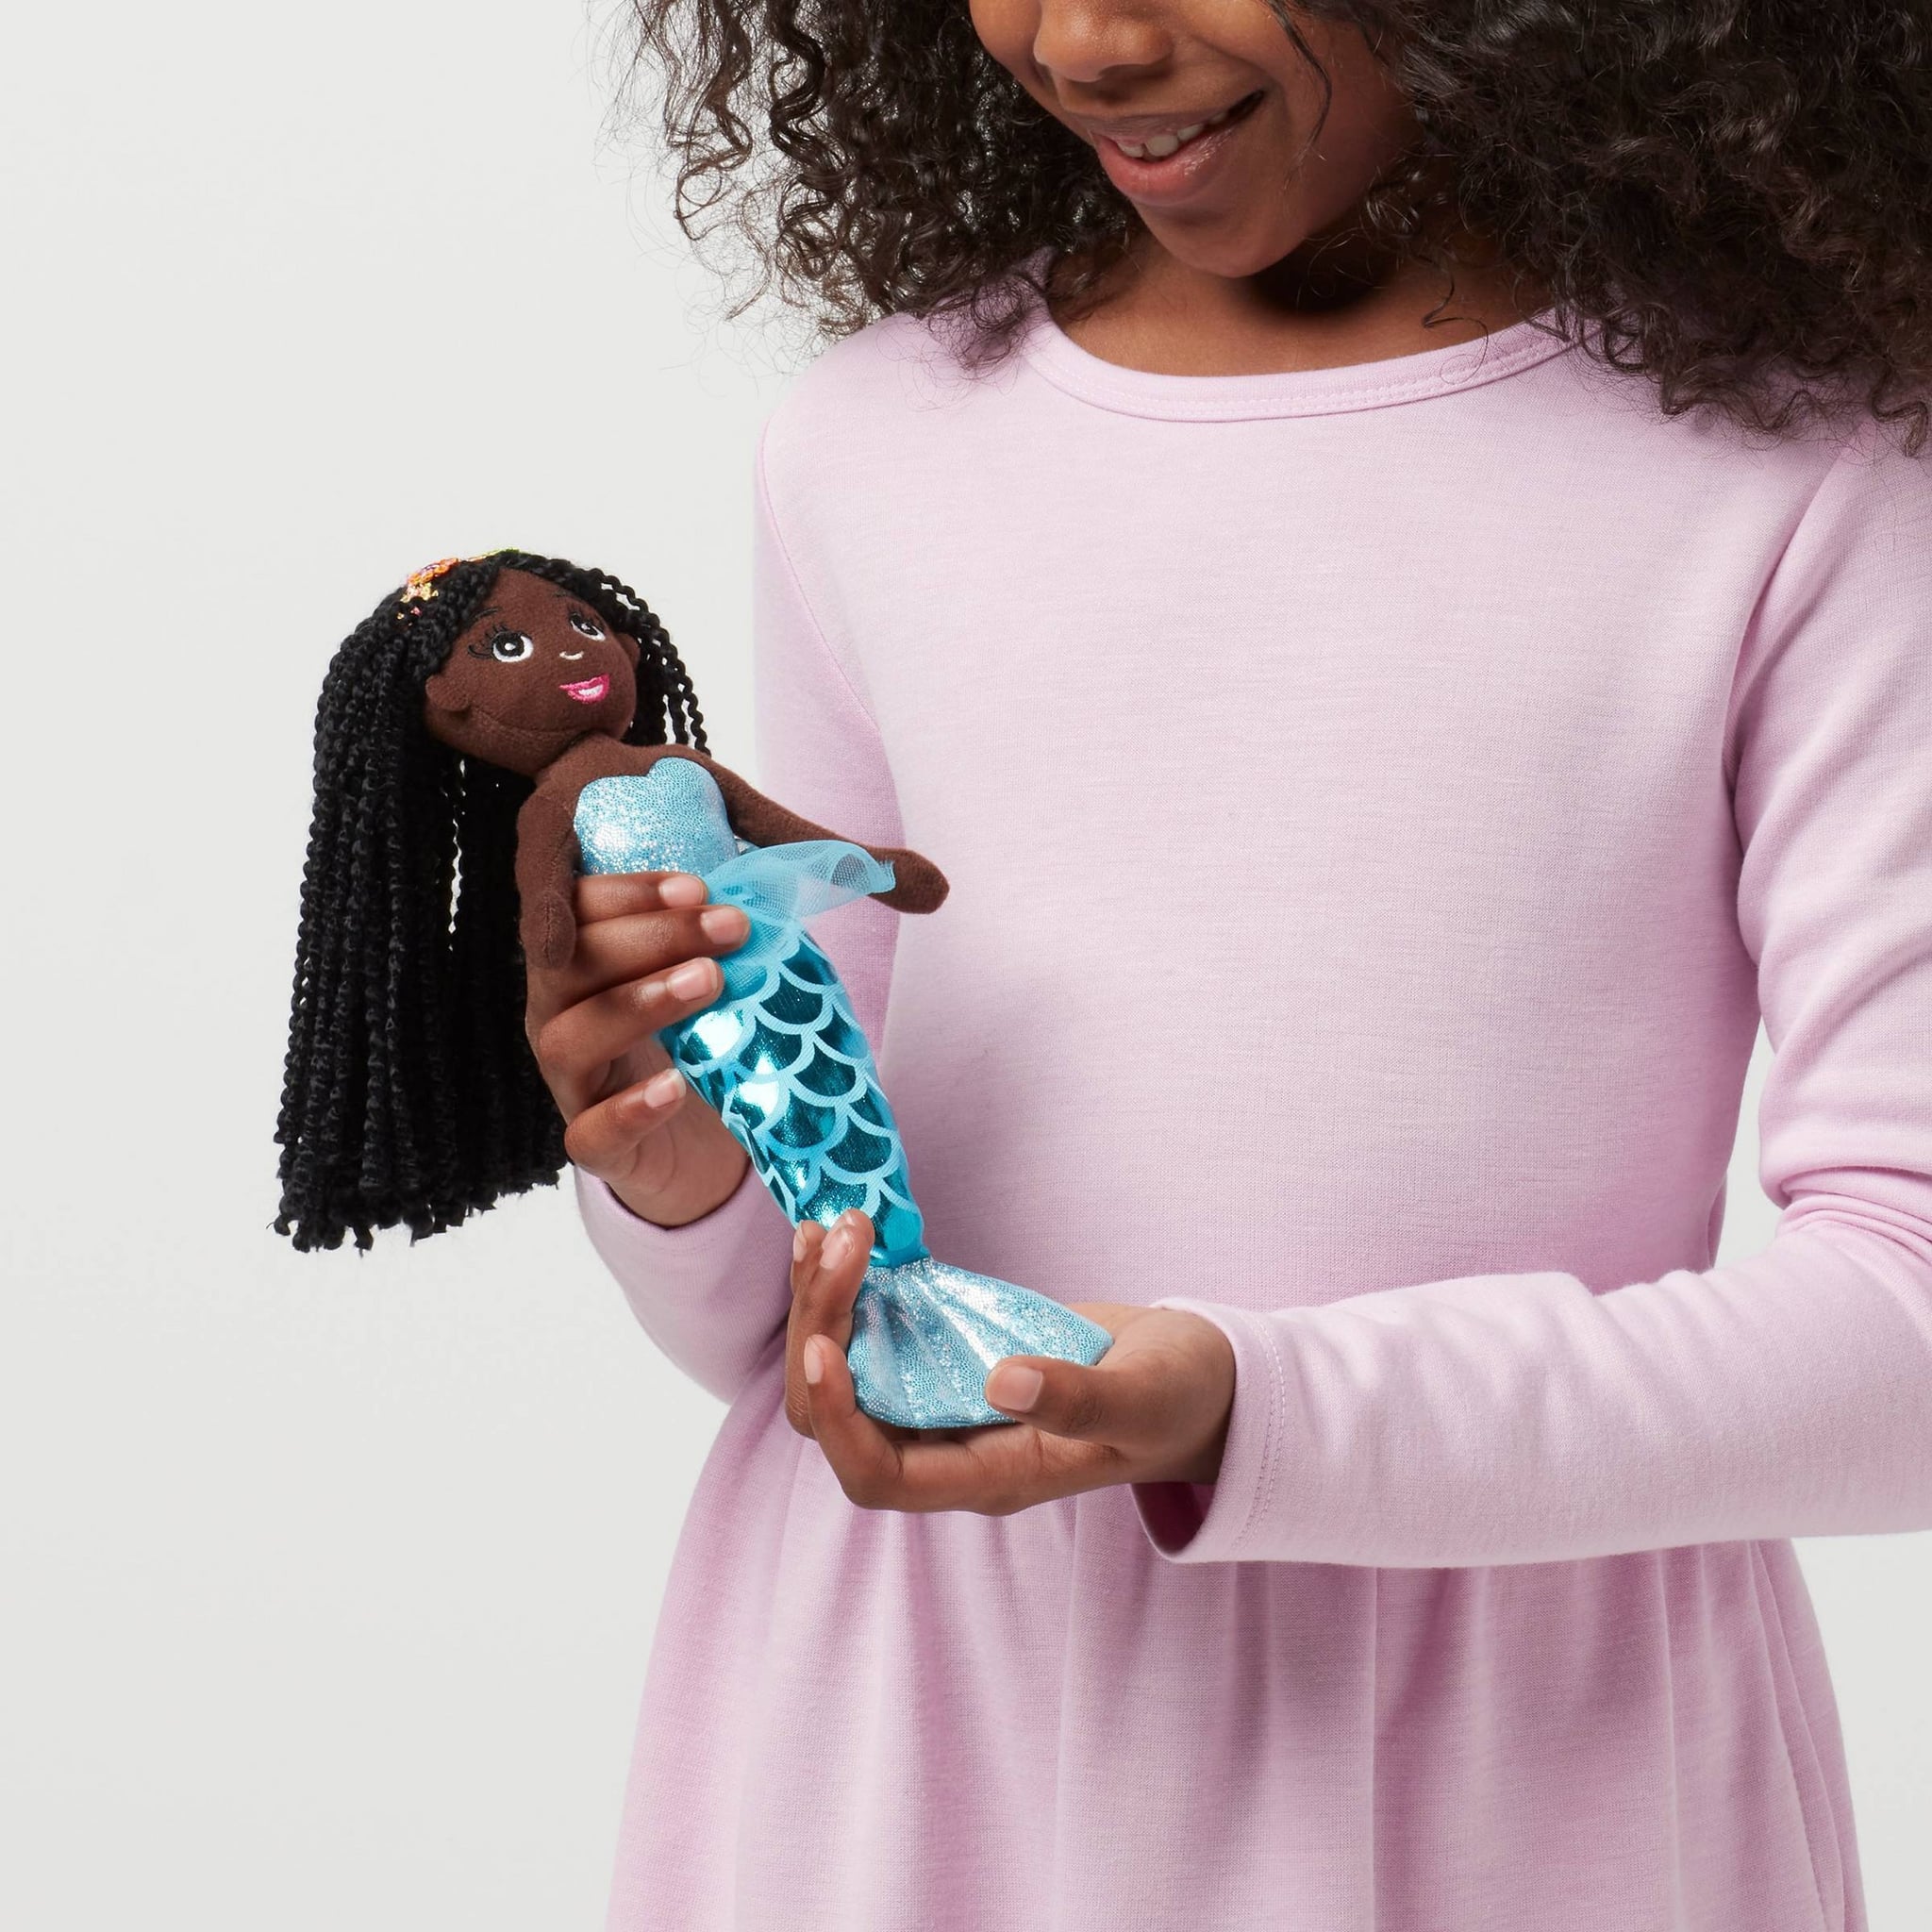 Preschool Kids Finger Puppets Plush Dolls Family Story Children Baby Game DO 